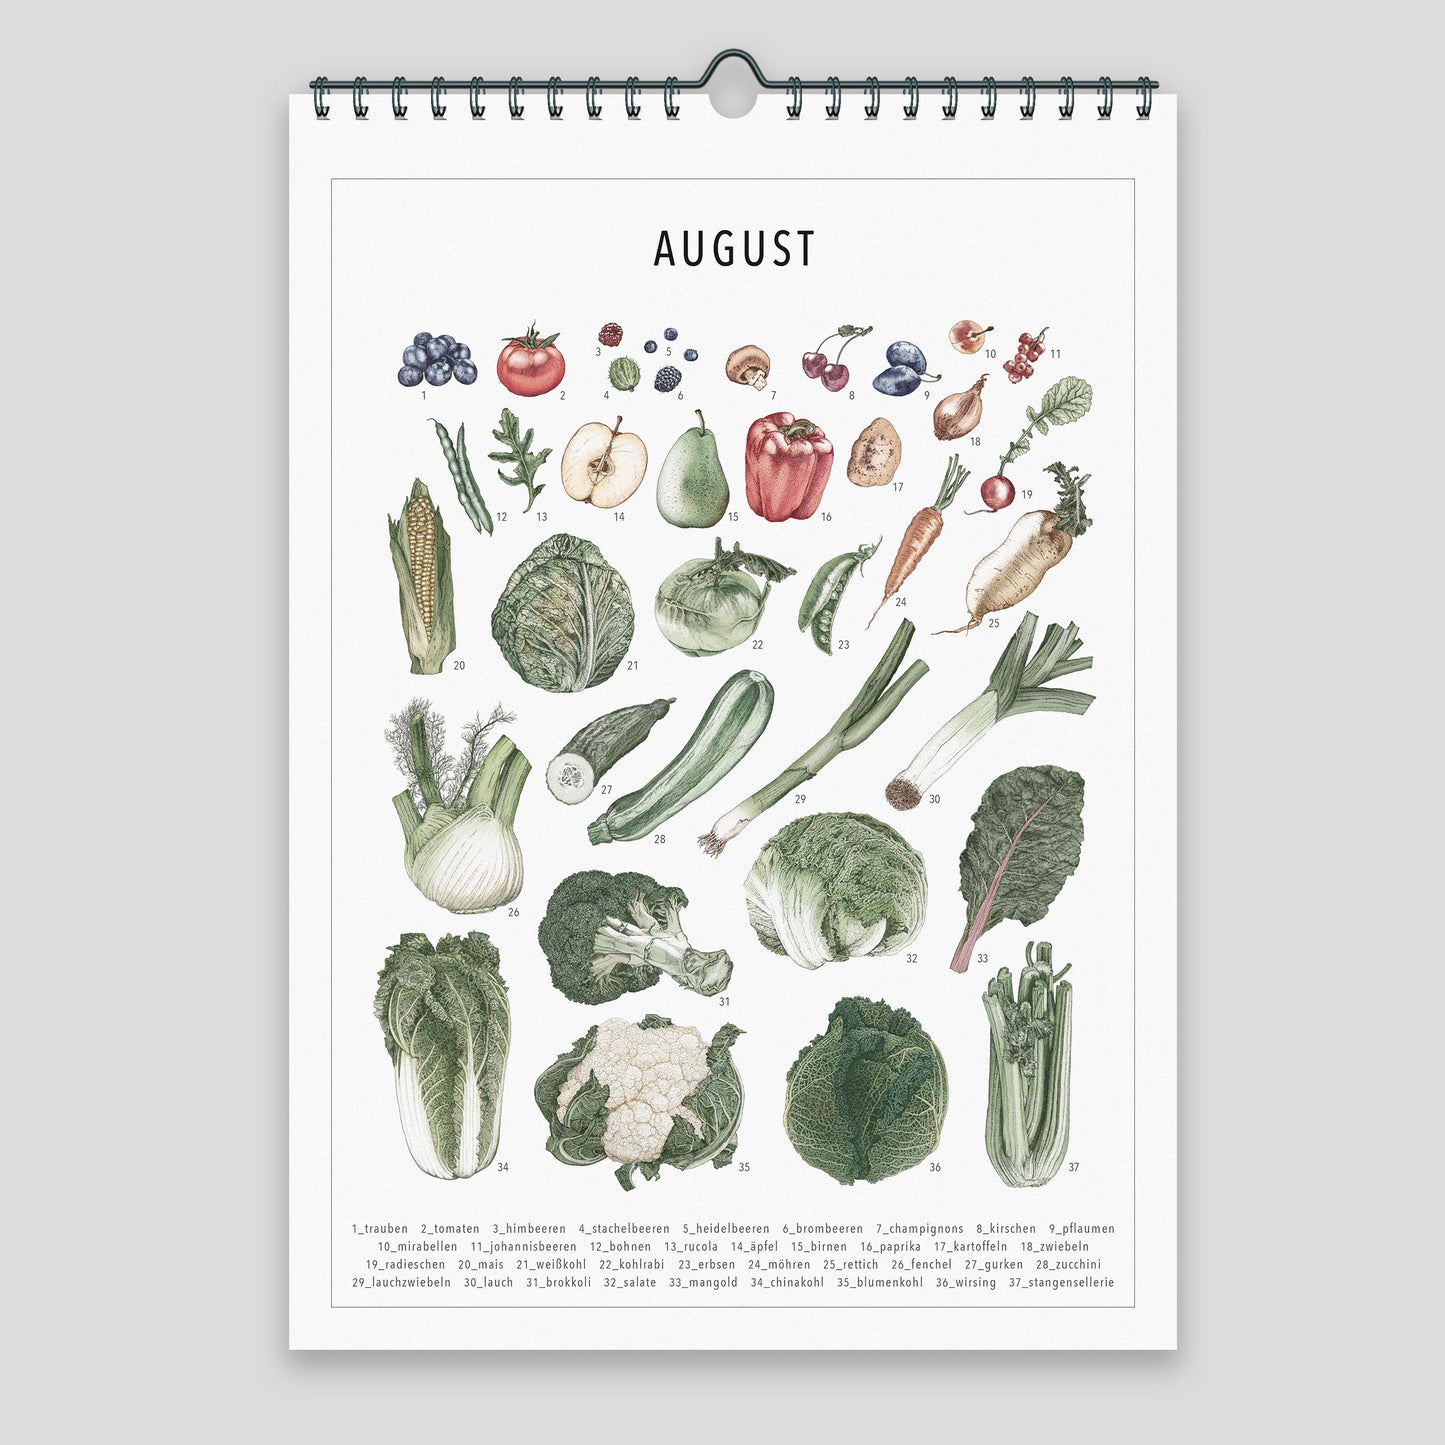 Saisonkalender – Wandkalender Coloriert (DINA4)